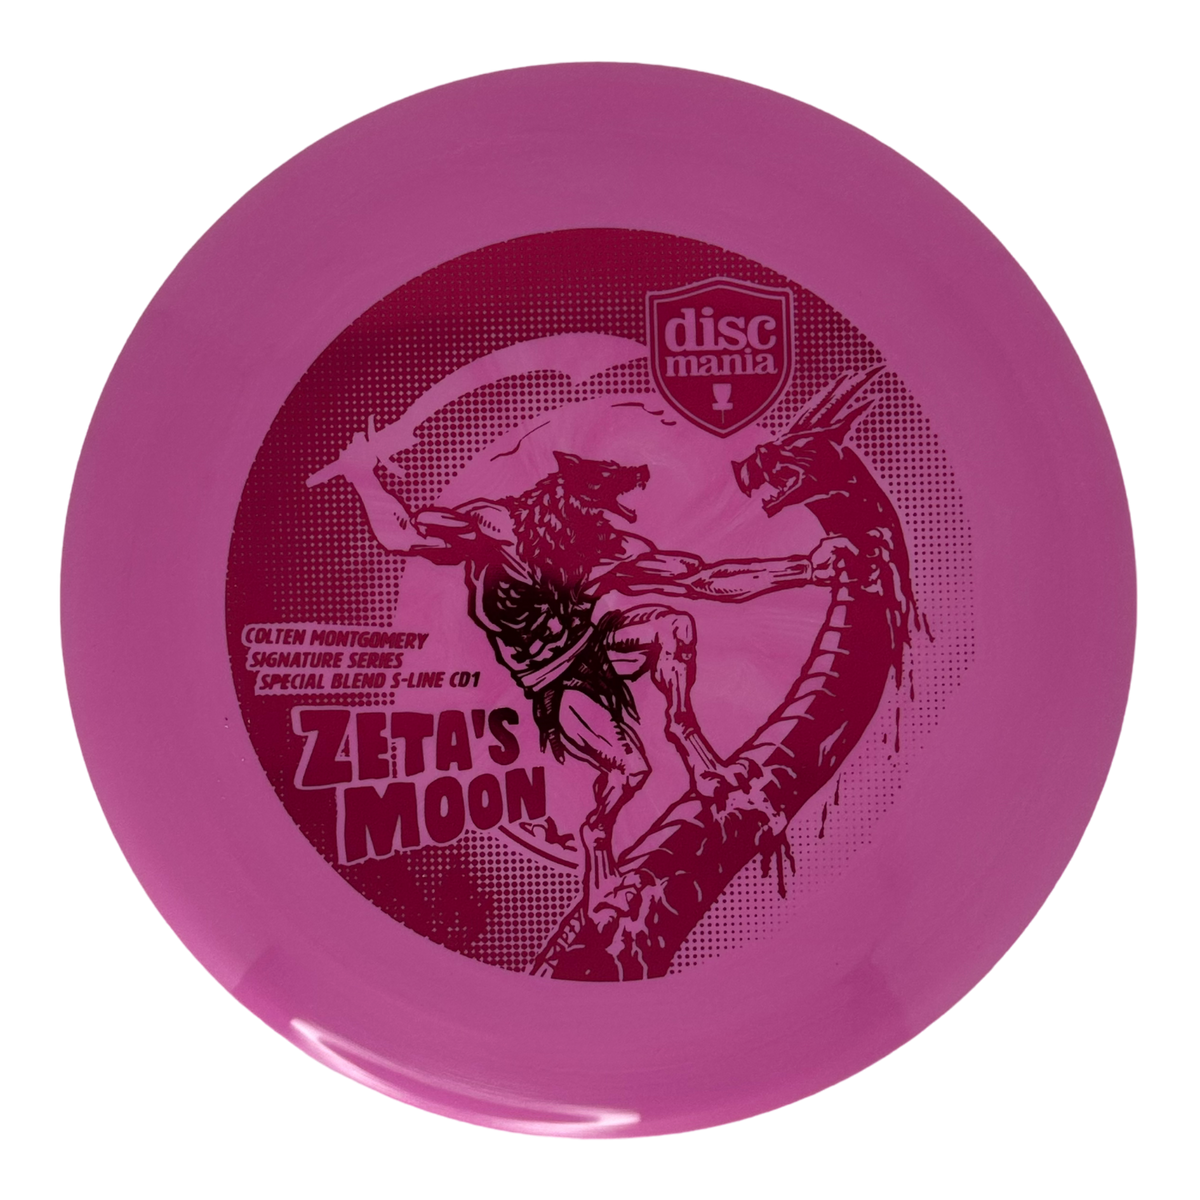 Discmania Zeta&#39;s Moon Special Blend S-Line CD1 - Colten Montgomery